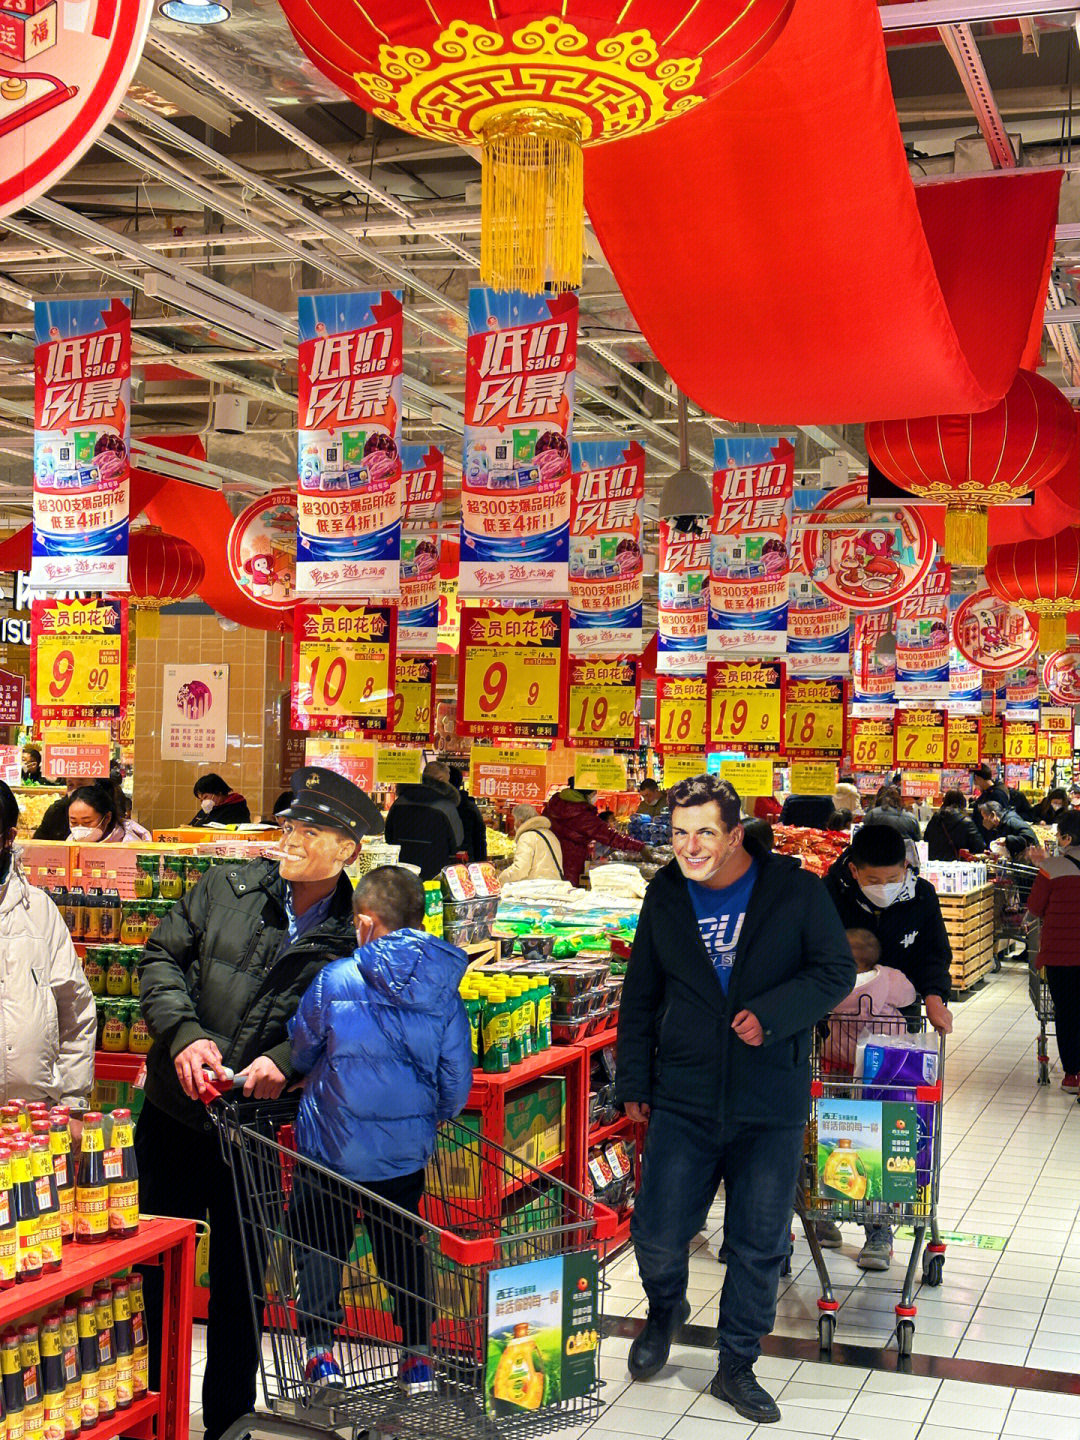 大润发是在济南最爱逛的超市了06嗨购不停马上跨年元旦假期倒计时